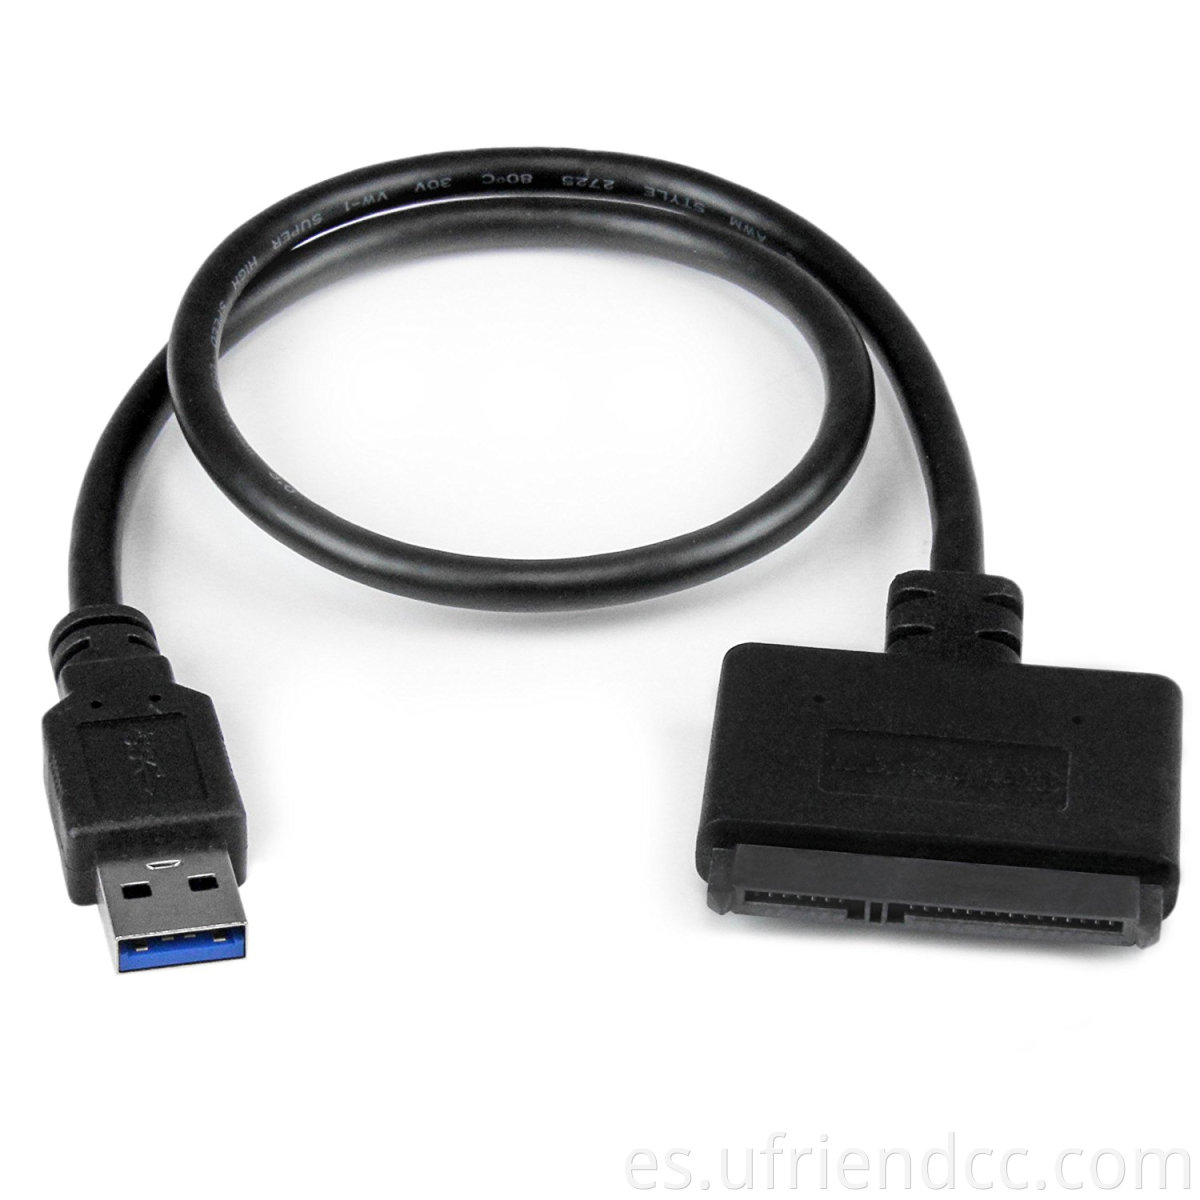 Cable adaptador de disco duro USB 3.0 SATA, cable adaptador SATA a USB para SSD y HDD de 2.5 pulgadas, soporte UASP, 9 pulgadas, negro